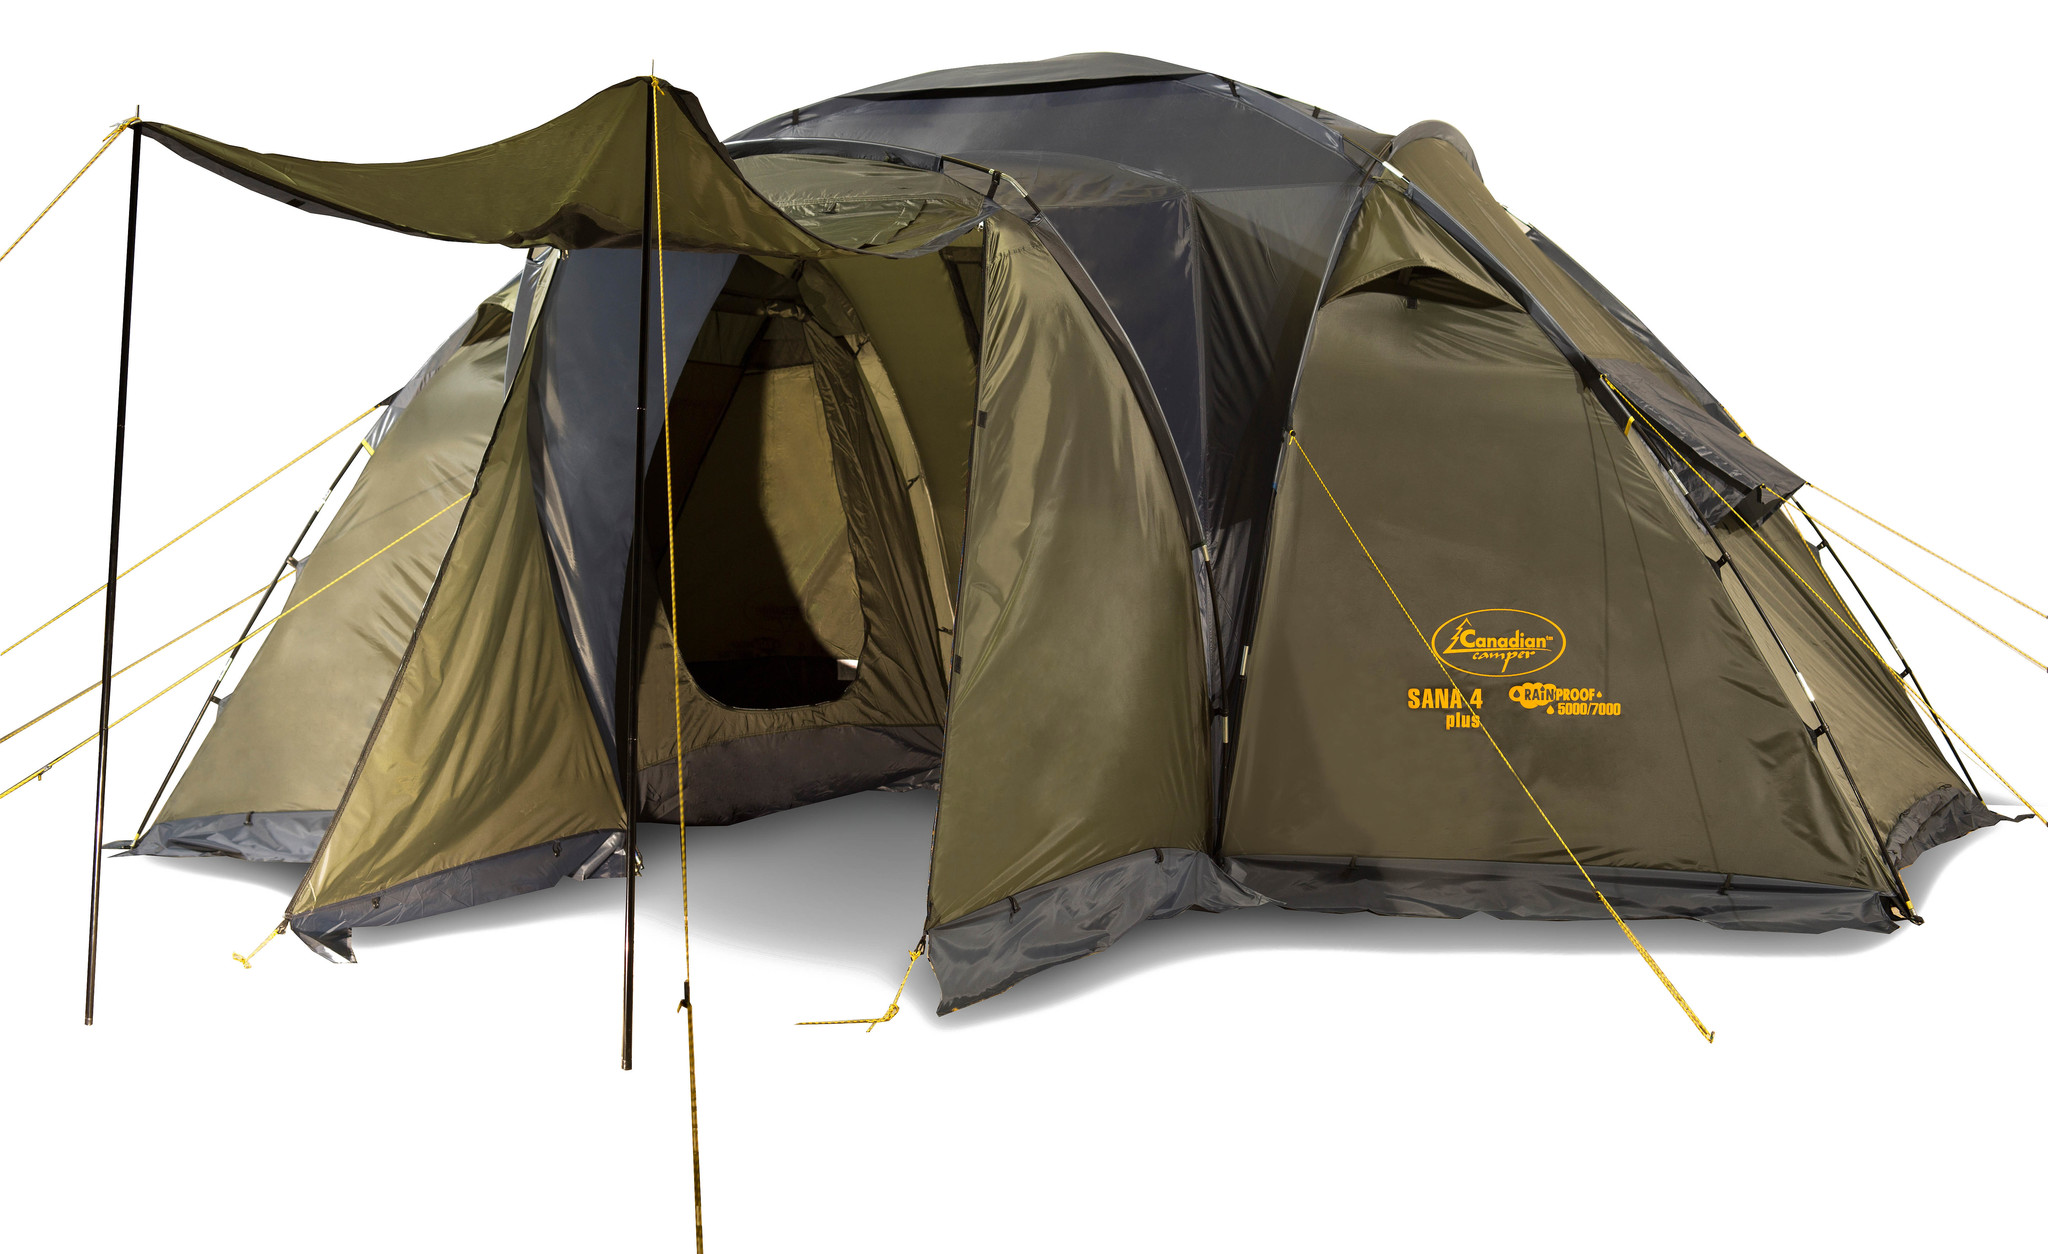 Кемпинговая палатка Canadian Camper Sana на 4 места для лесного отдыха.